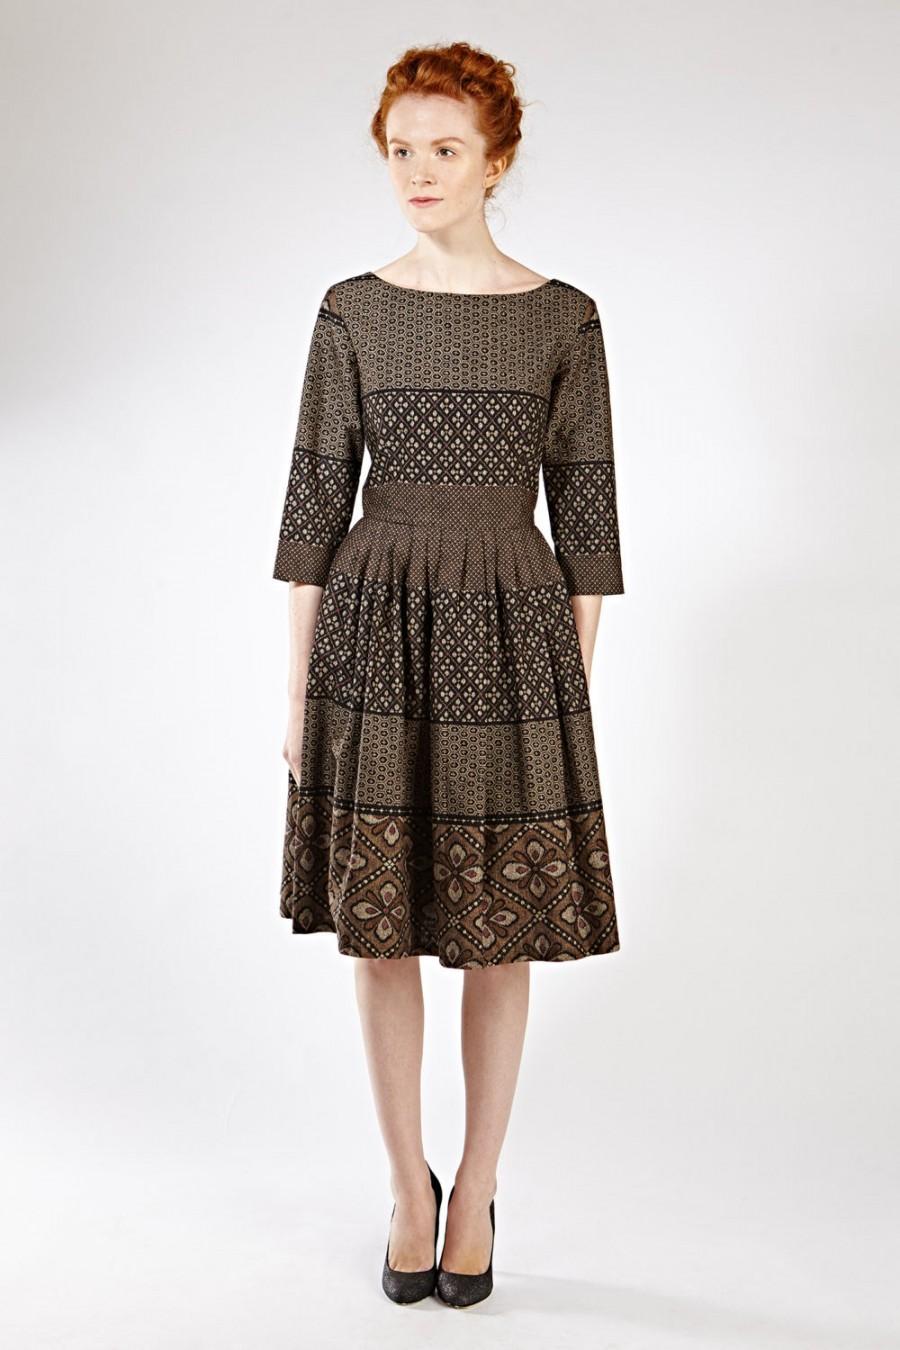 زفاف - Women Midi Dress, Brown Dress, Secretary Dress, 1950's Dress, Linen Dress, Vintage Style Dress, Office Dress, Retro Dress, Minimalist,Modest